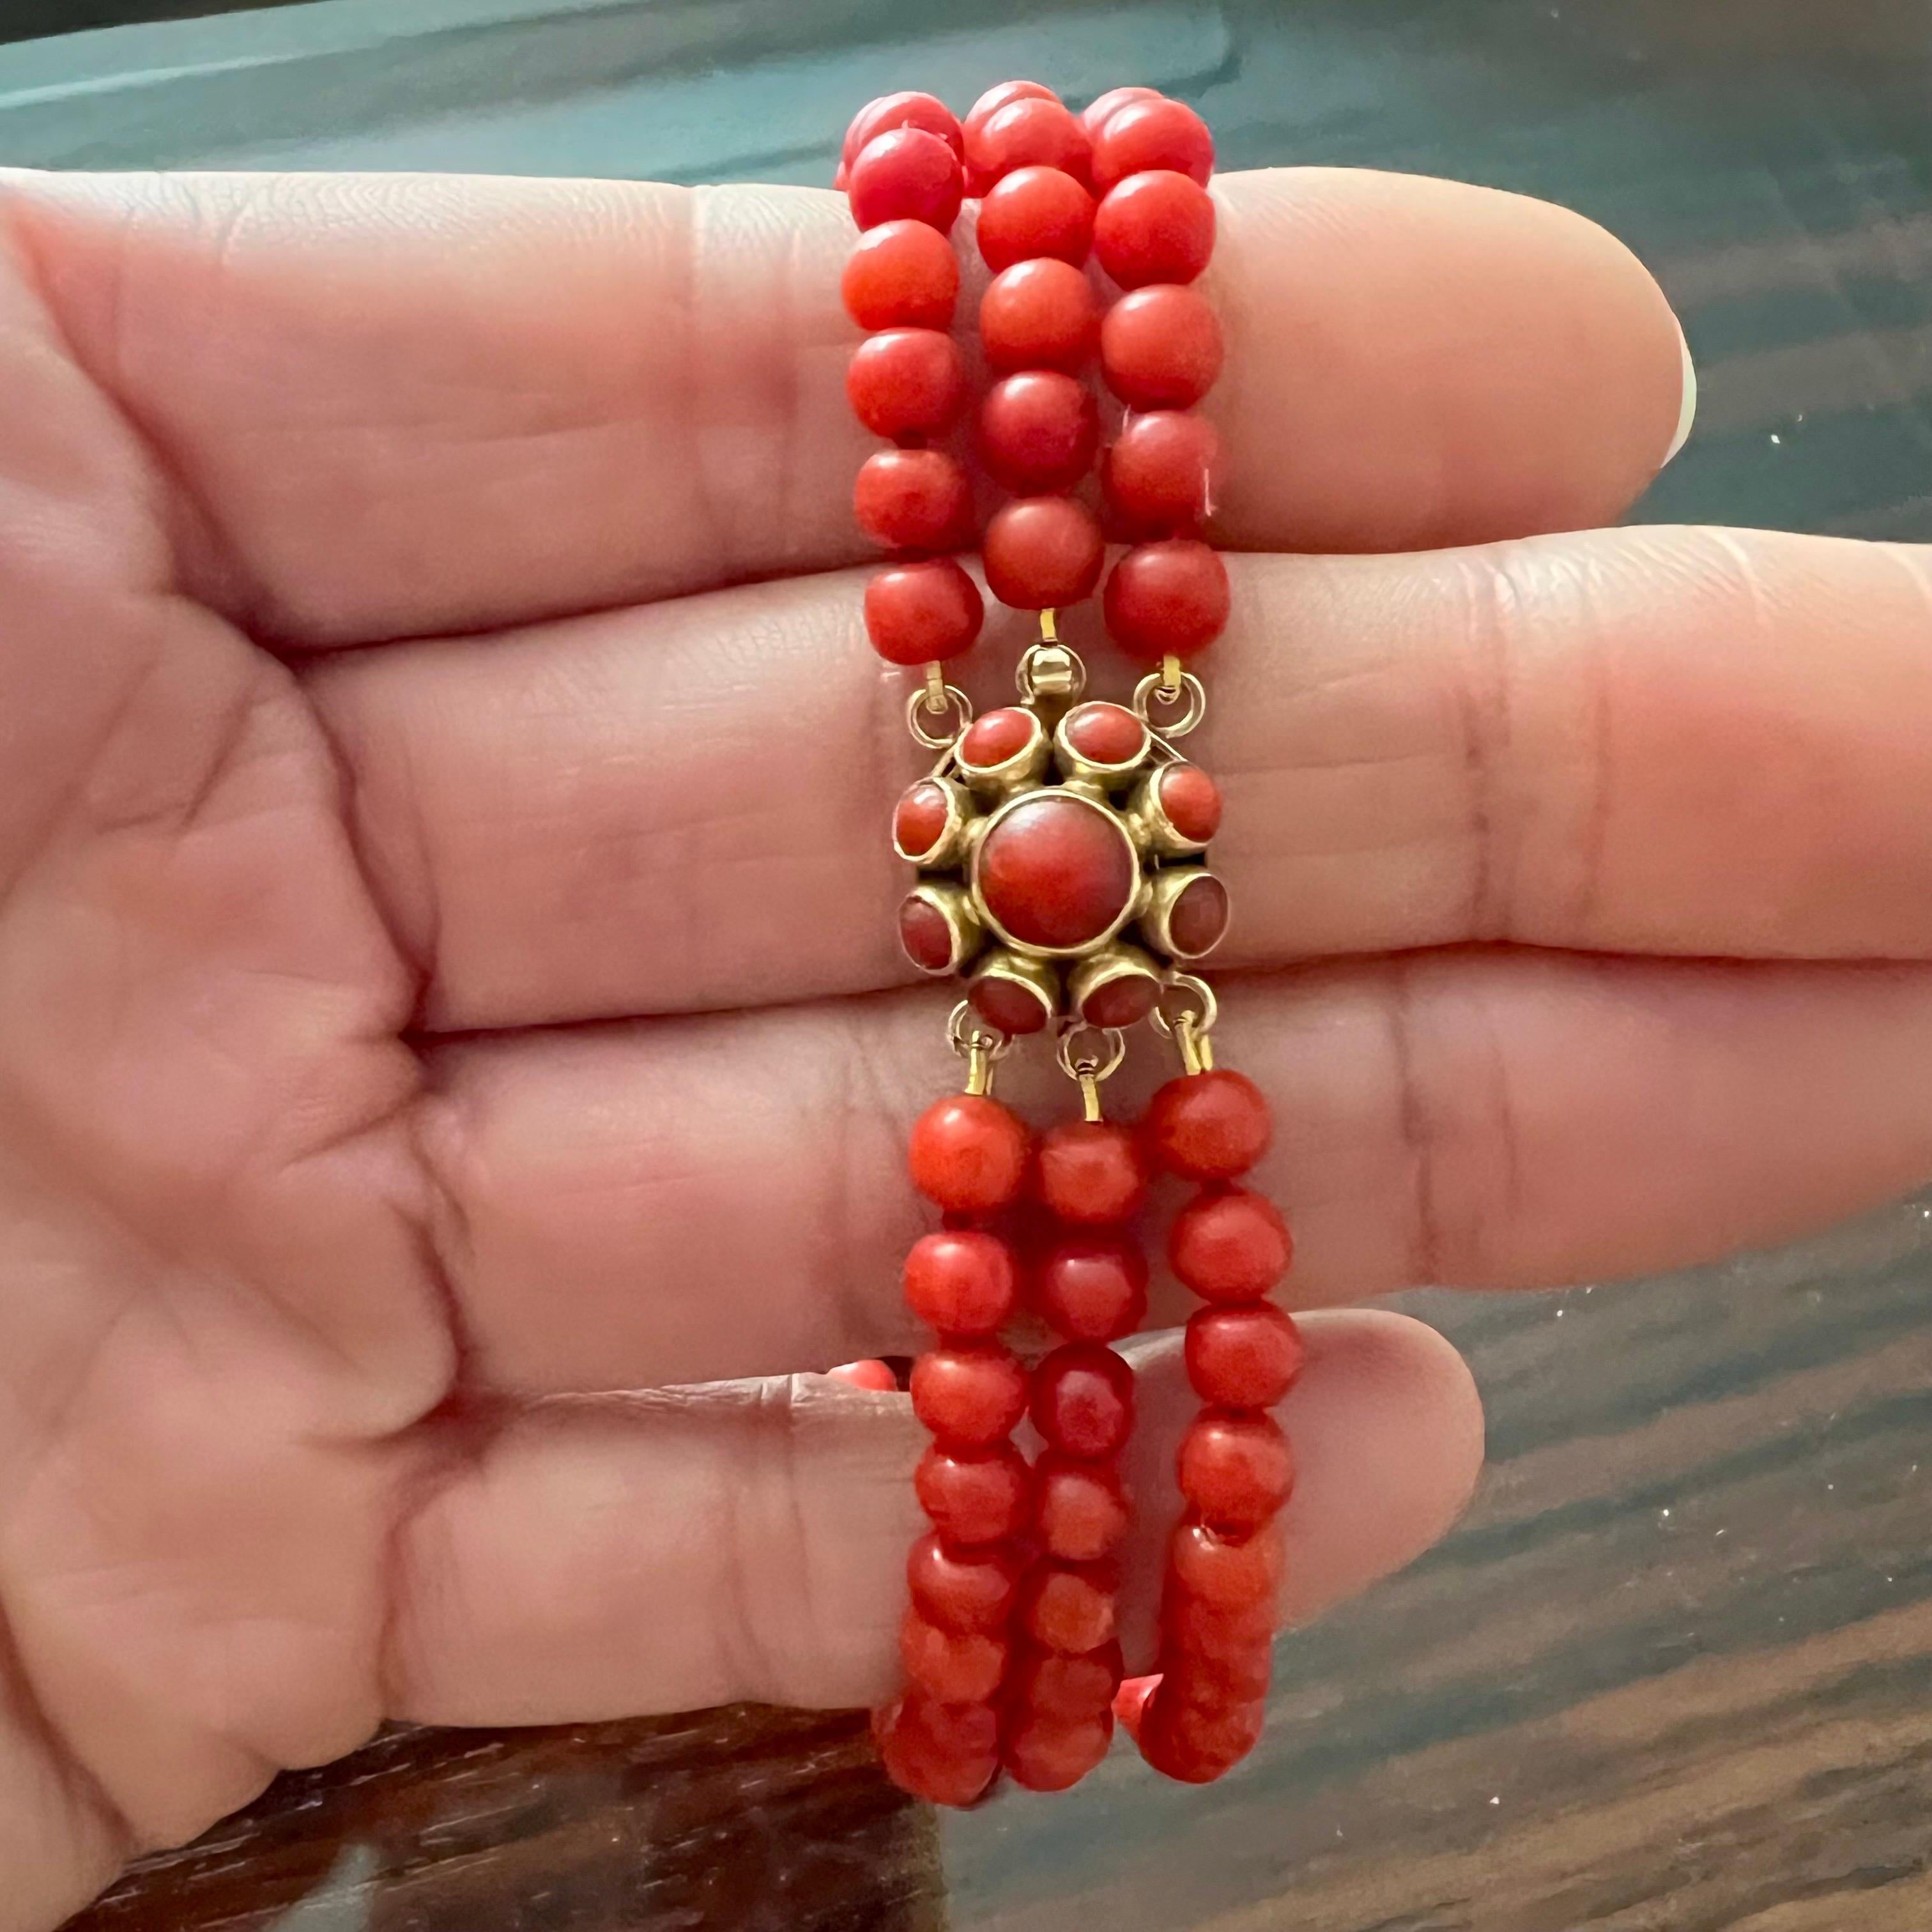 Dies ist ein dreireihiges Armband aus roter Koralle im Vintage-Stil mit einem Verschluss aus 14 Karat Gold. Die Korallenperlen sind rund und haben alle die gleiche Größe und Form. Die  Der schöne runde Verschluss ist mit einem Cluster aus roten